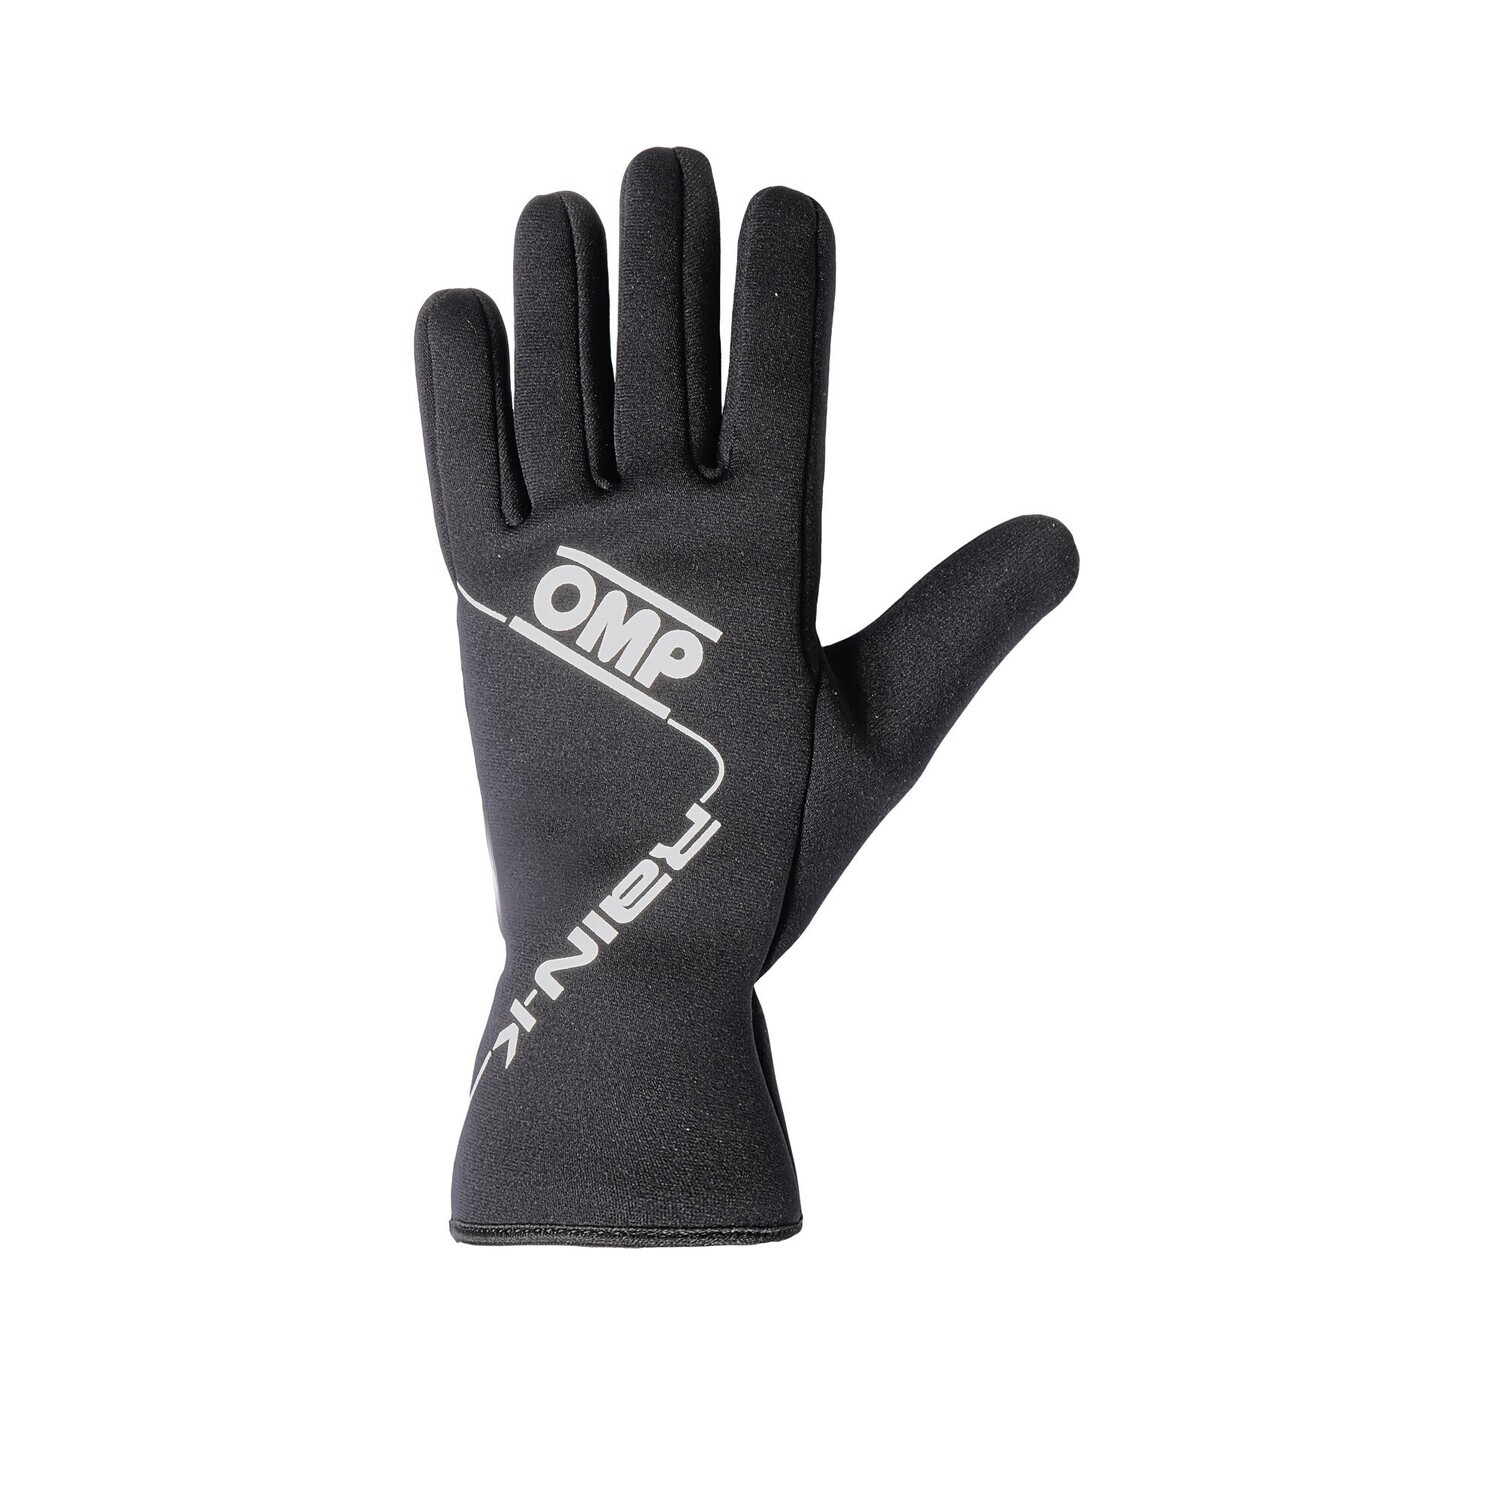 OMP Rain-K gloves